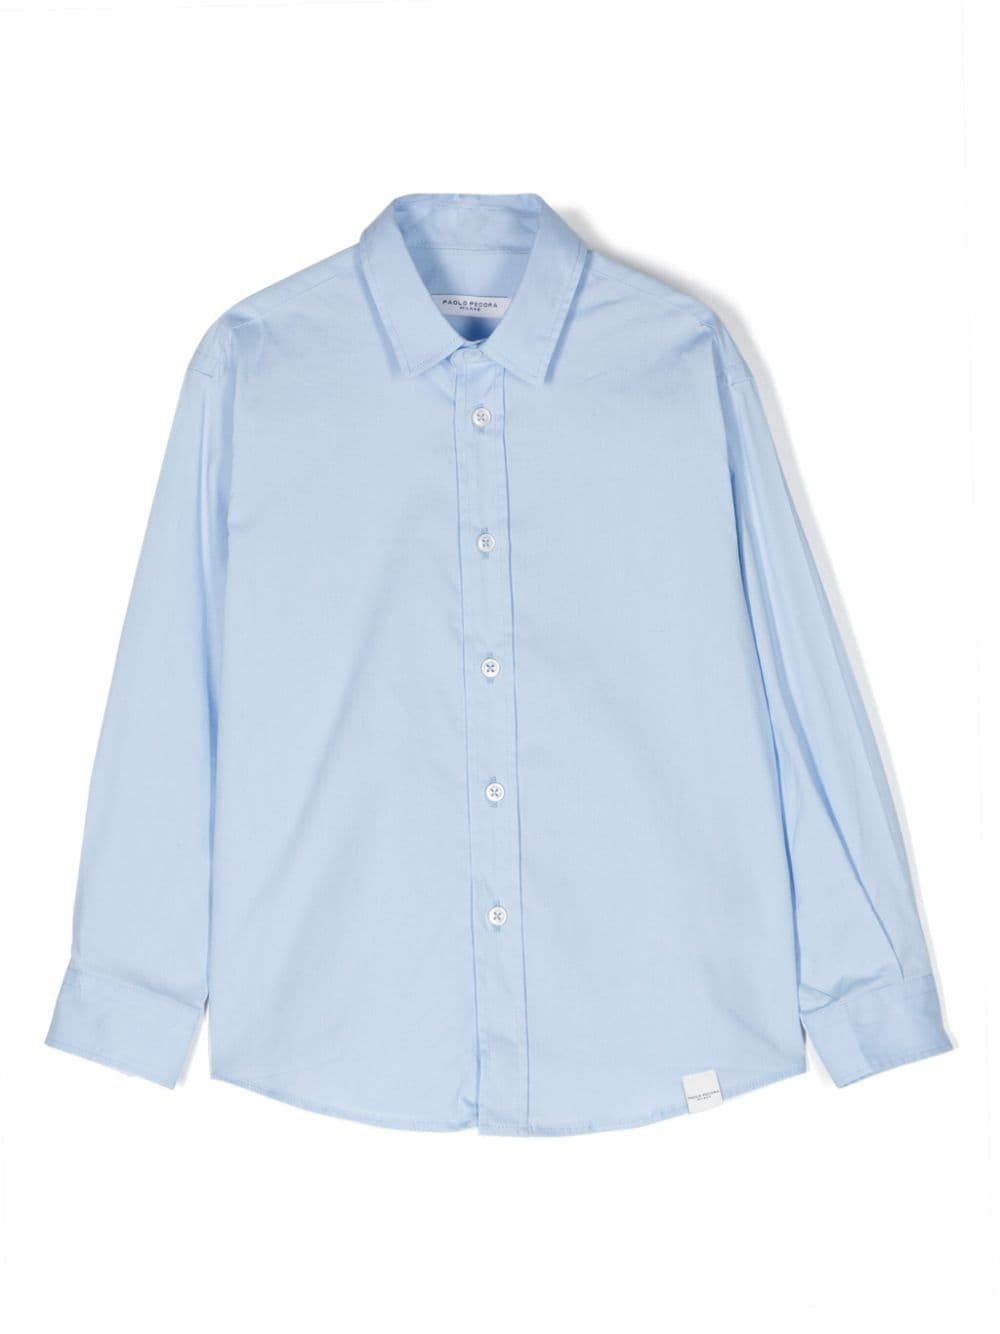 Camicia azzurra per bambino in cotone